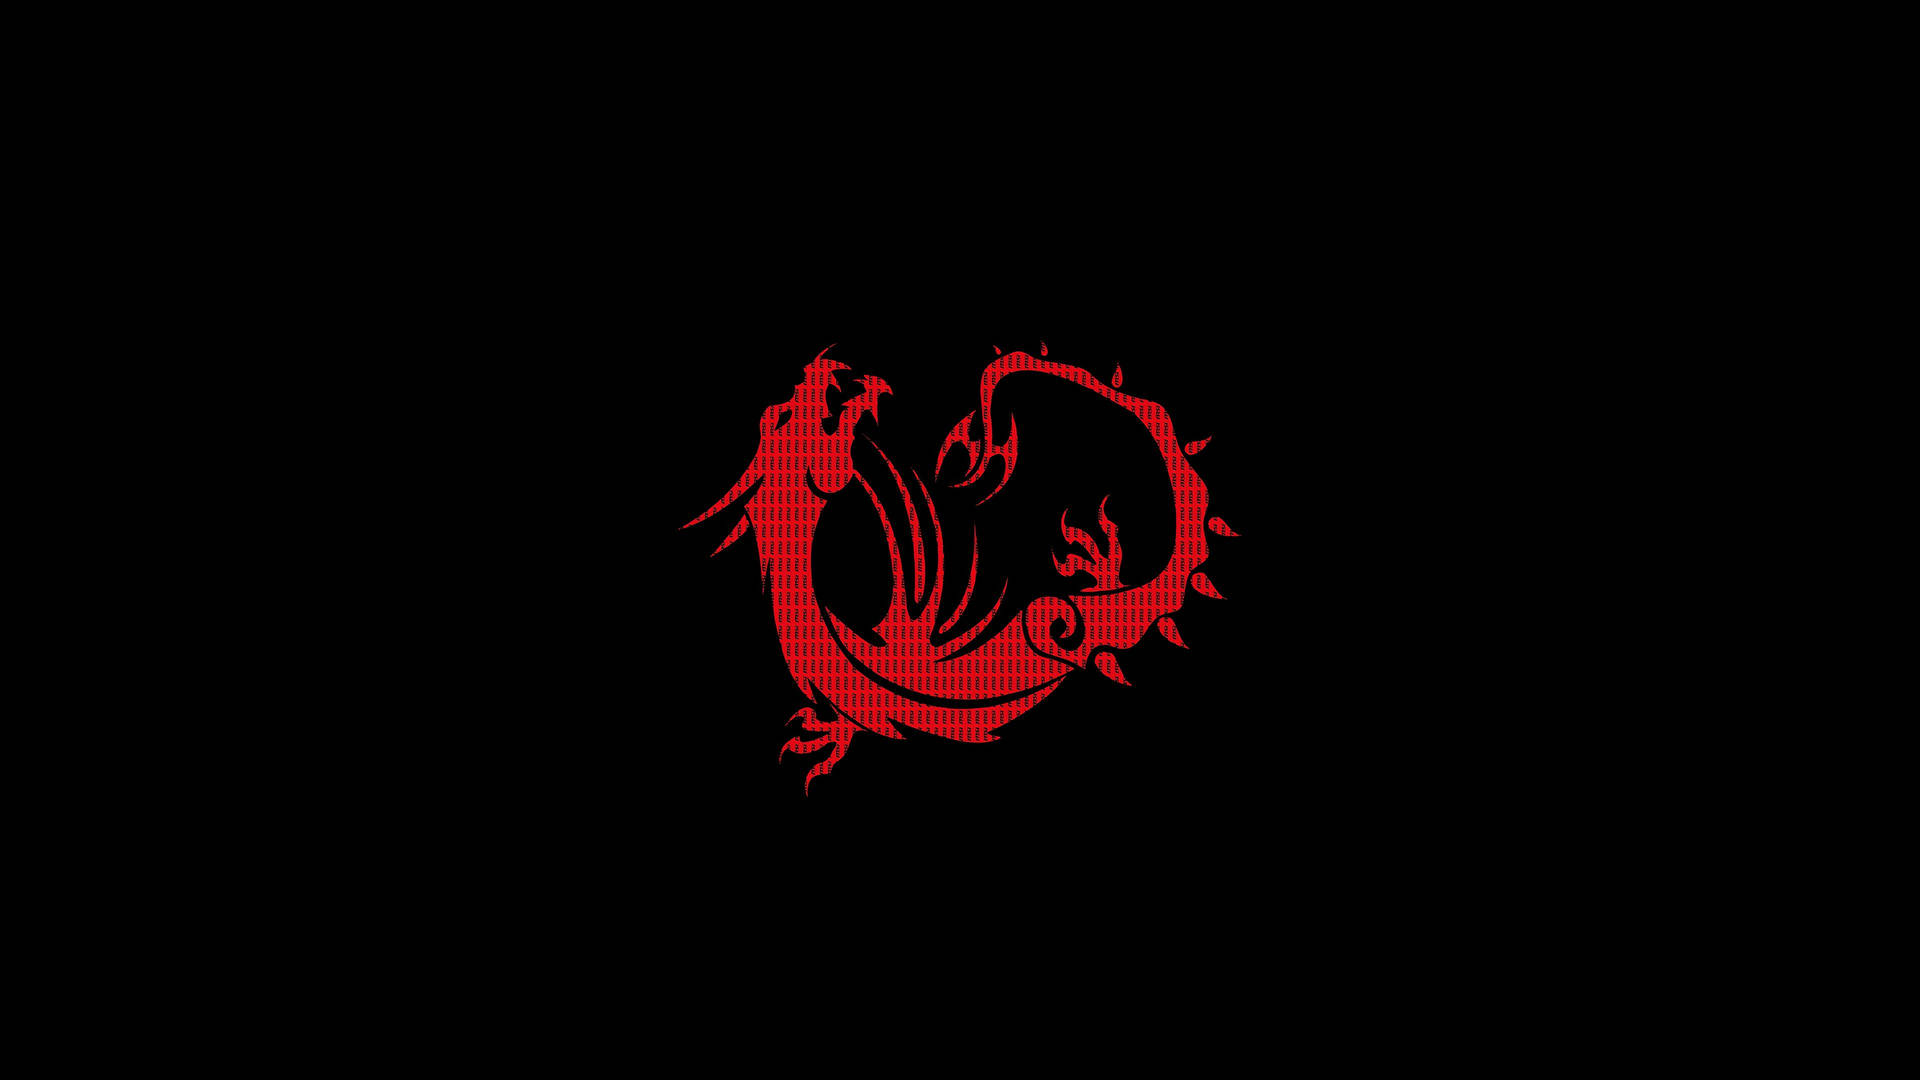 Msi 4k Red Dragon In Black Wallpaper